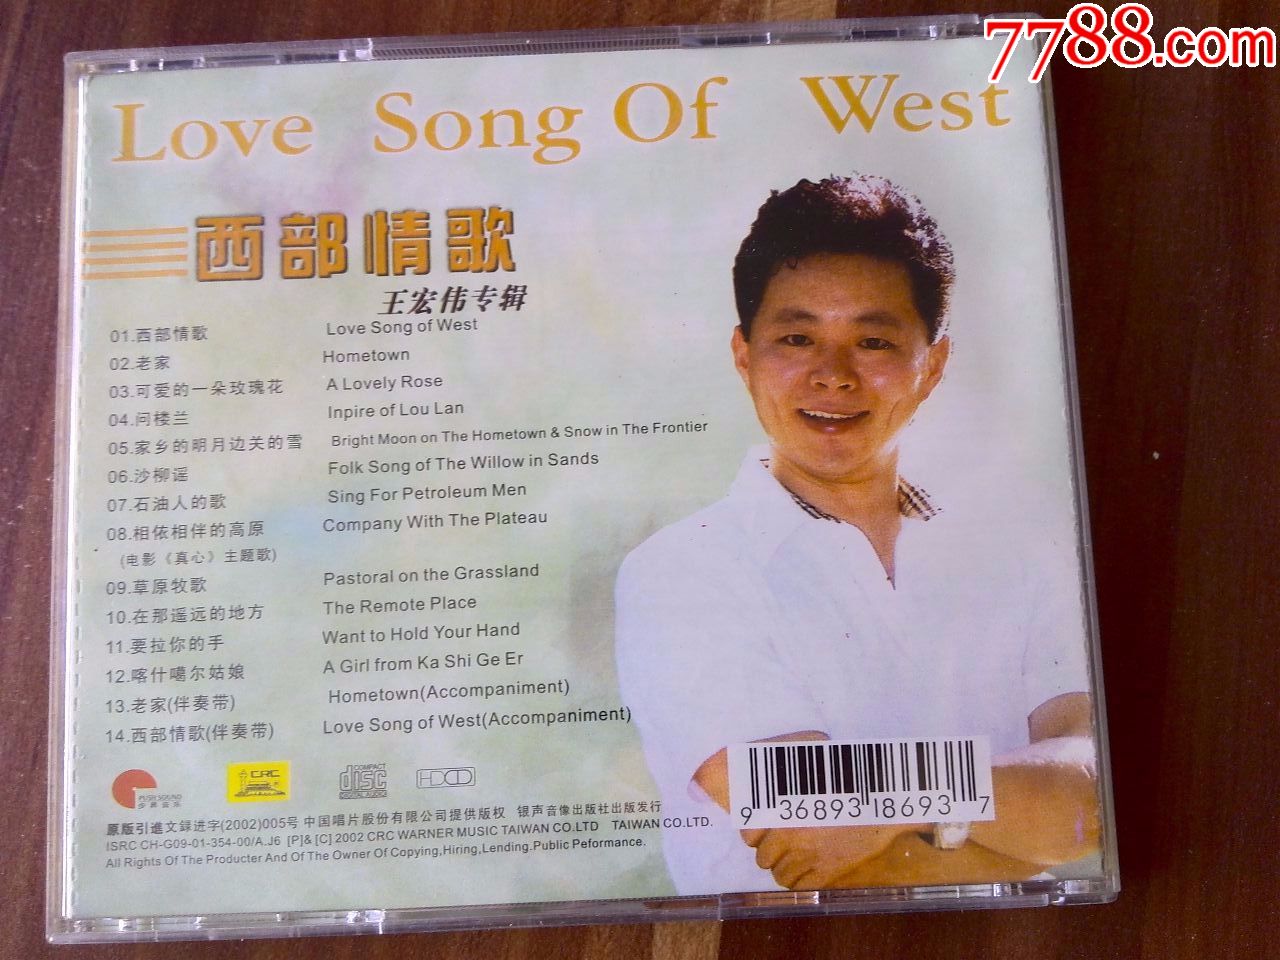 中国男高音歌唱家王宏伟演唱专辑《西部情歌》